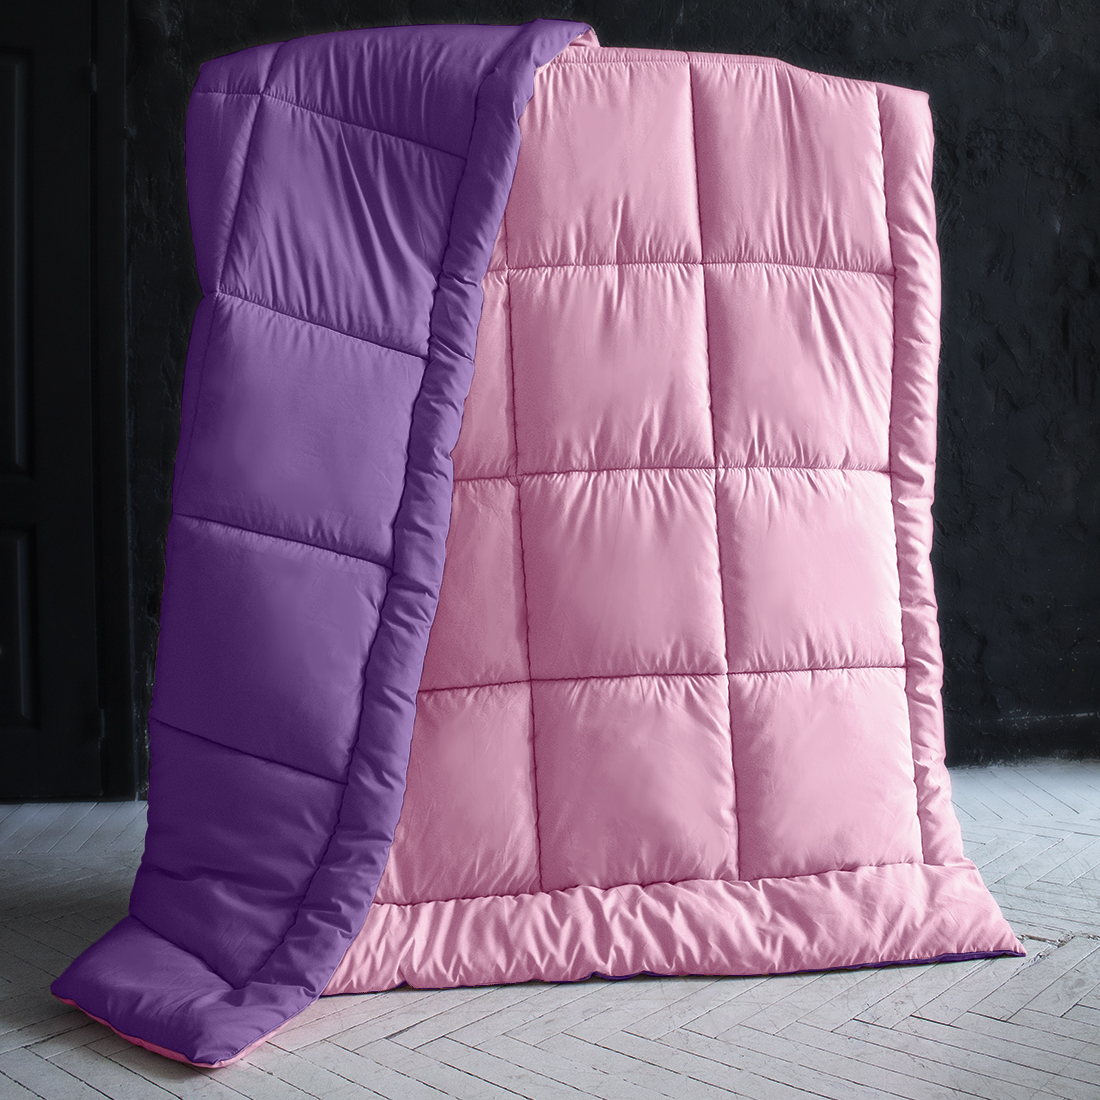 Одеяло MultiColor цвет: сиреневый, темно-фиолетовый (140х205 см), размер 140х205 см pva410849 Одеяло MultiColor цвет: сиреневый, темно-фиолетовый (140х205 см) - фото 1